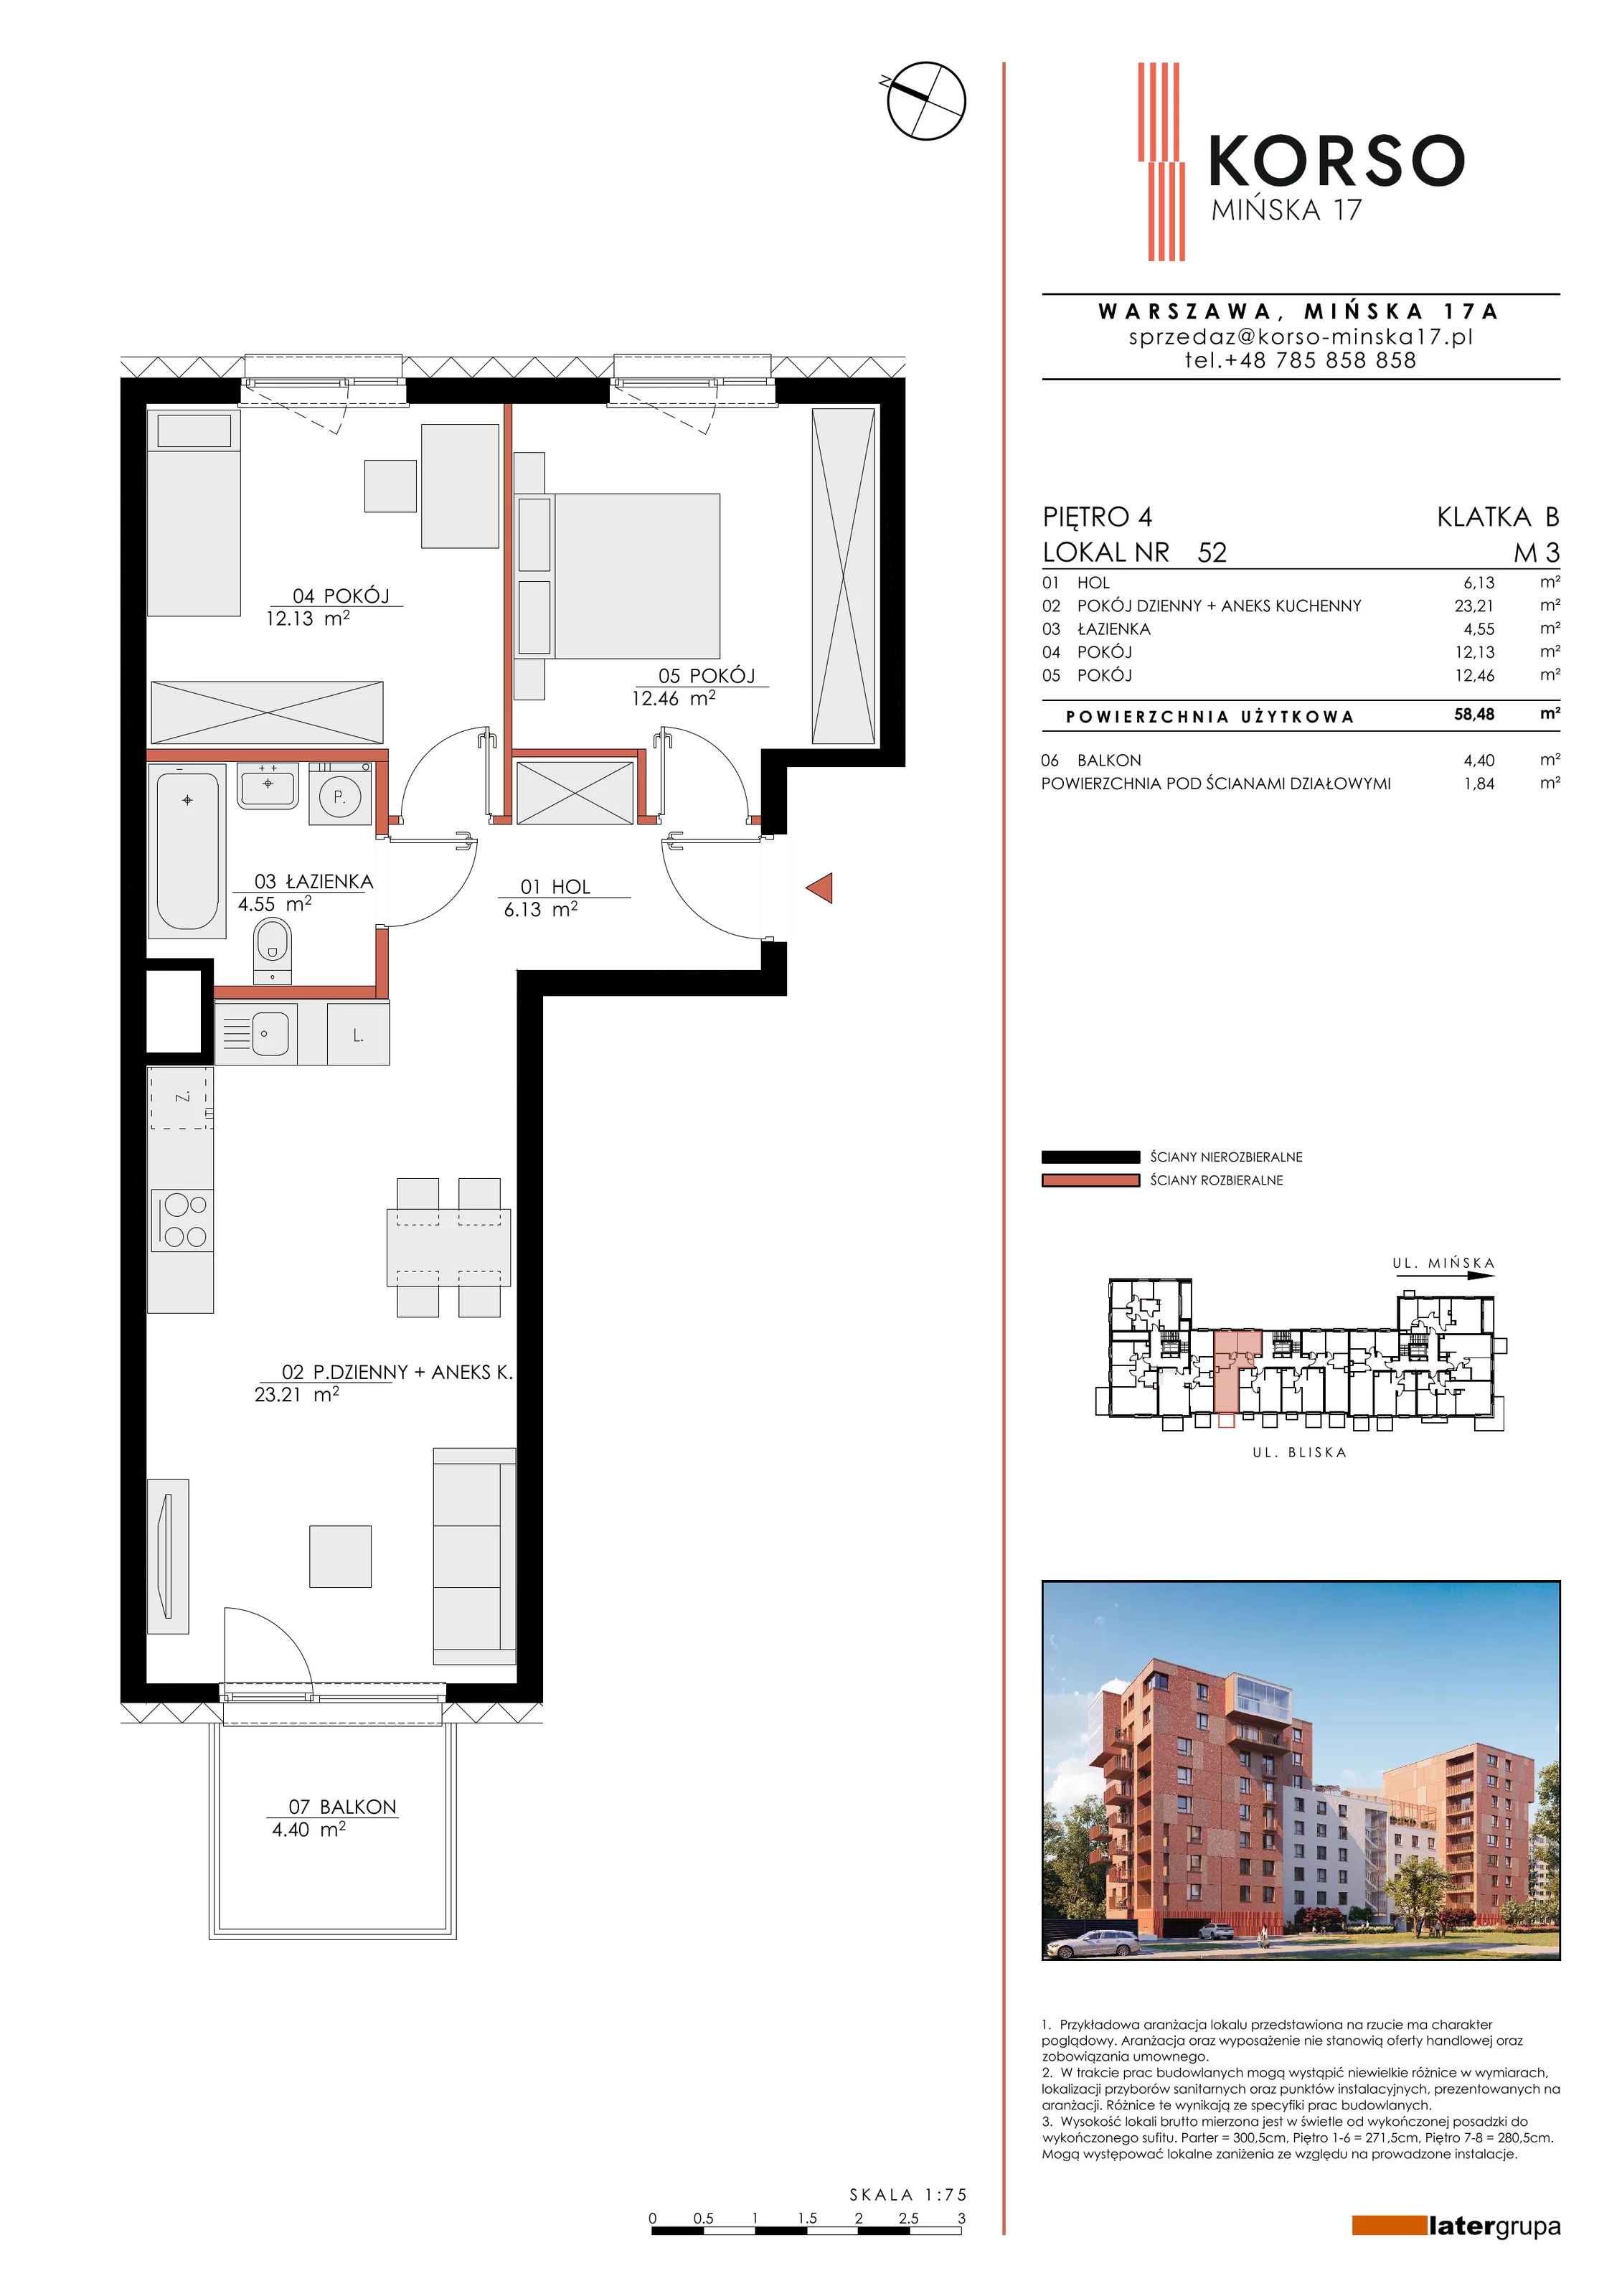 Mieszkanie 58,48 m², piętro 4, oferta nr 52, KORSO Mińska 17, Warszawa, Praga Południe, Kamionek, ul. Mińska 17